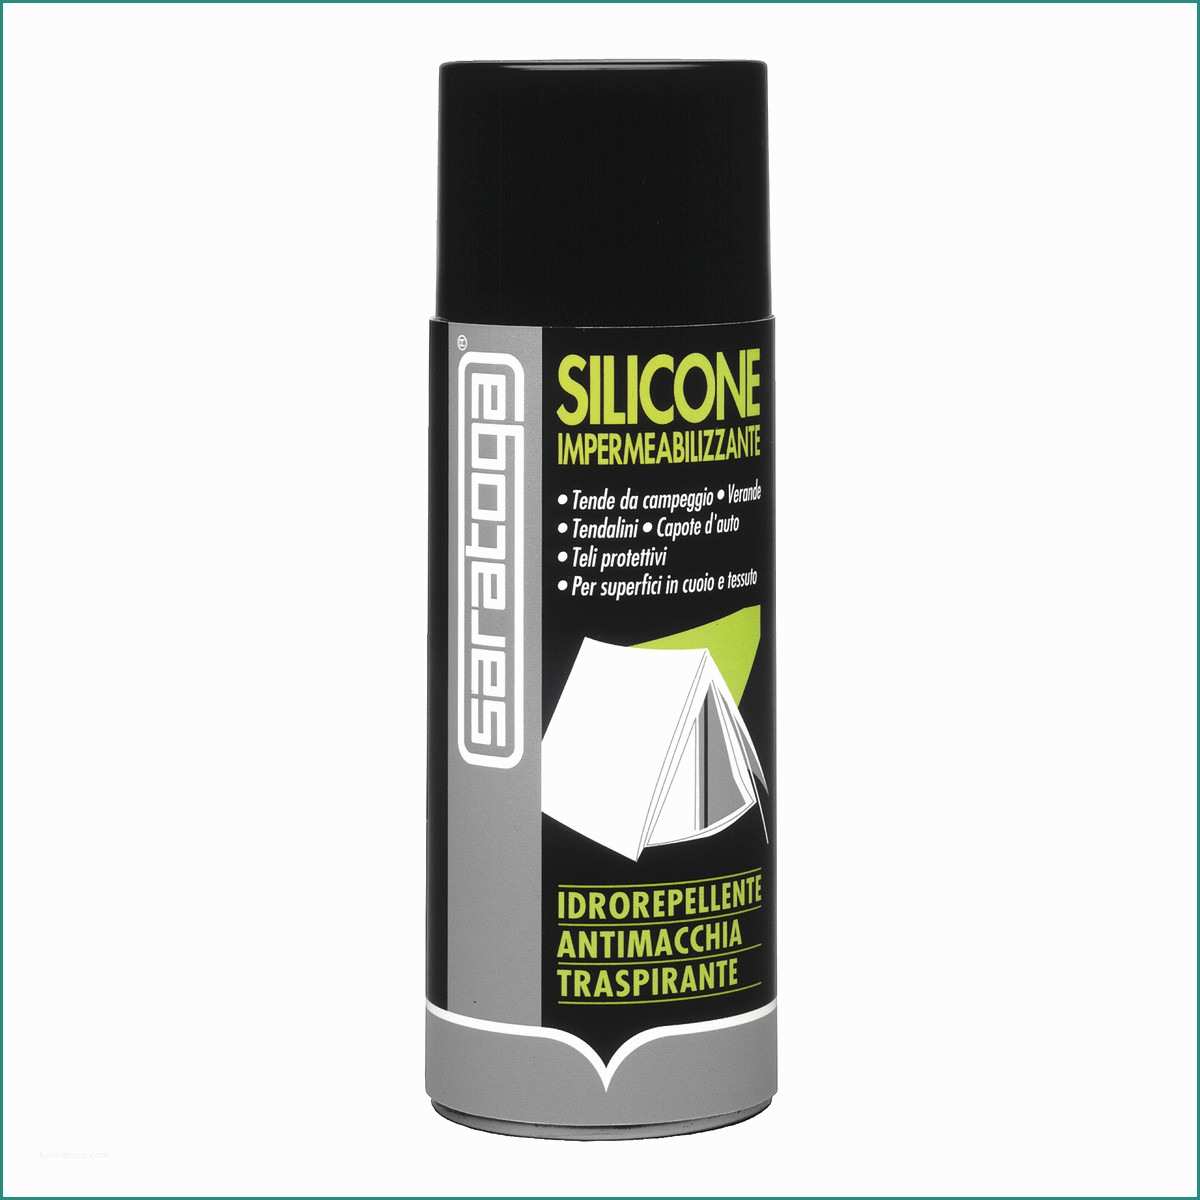 Spray Sanificante Per Condizionatori Leroy Merlin E Spray Impermeabilizzante Crispi Imperwass Anfibi E